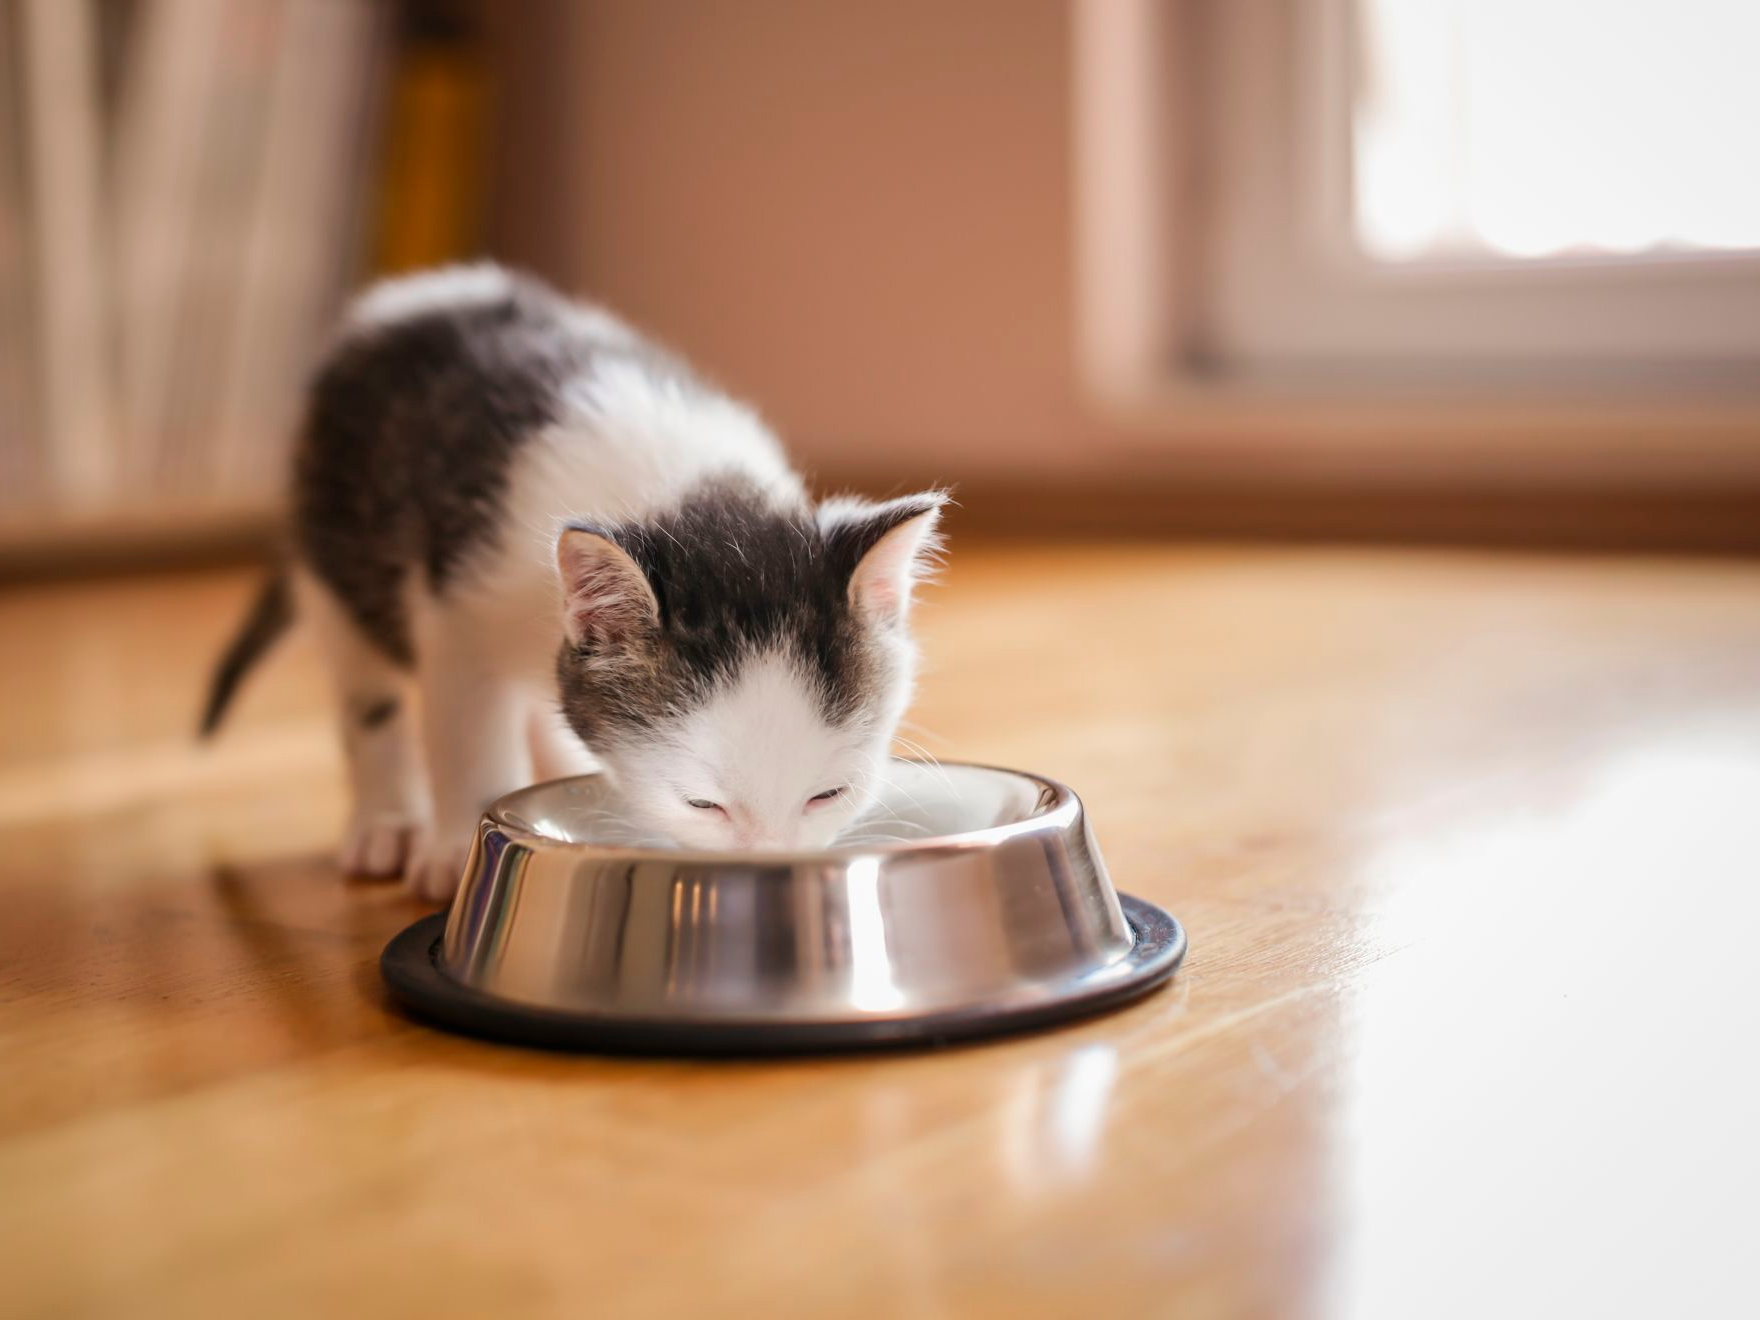 Kleines Kätzchen leckt Milch aus einem Napf, der auf dem Wohnzimmerboden neben einem Fenster steht